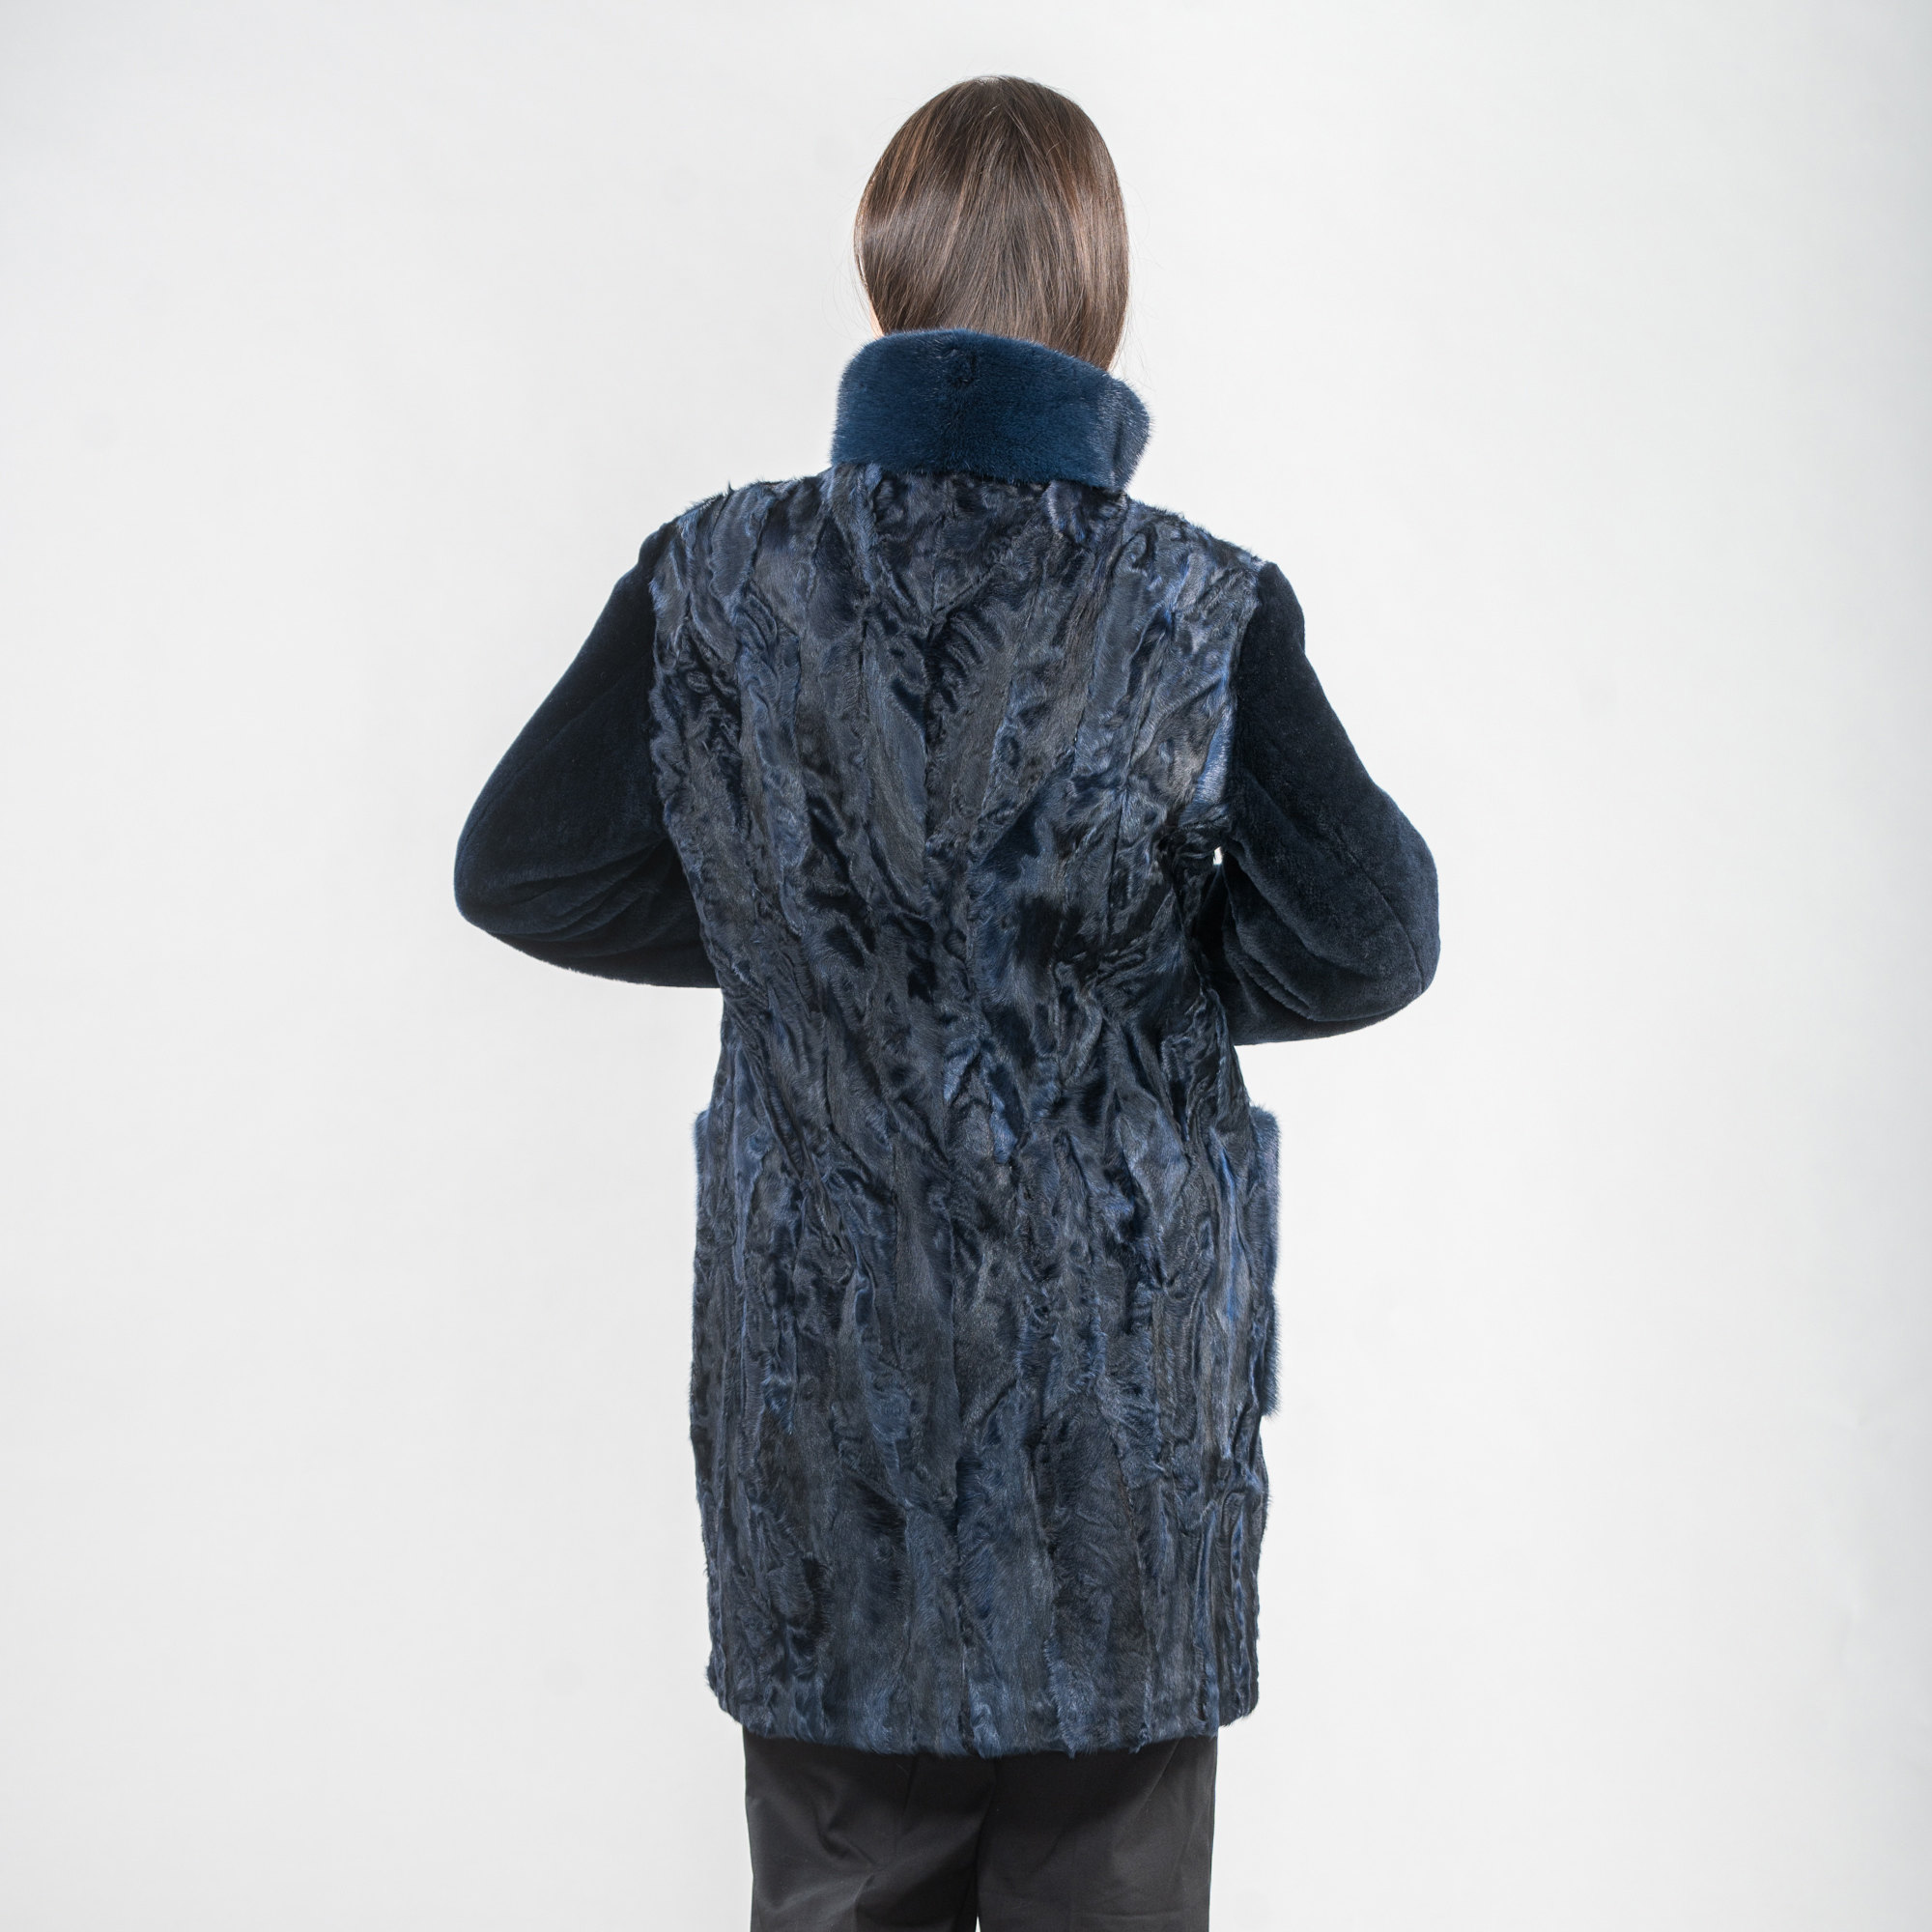 μπλέ γούνινο αστραχάν παλτό με στοιχεία γούνας βιζόν και προβάτου